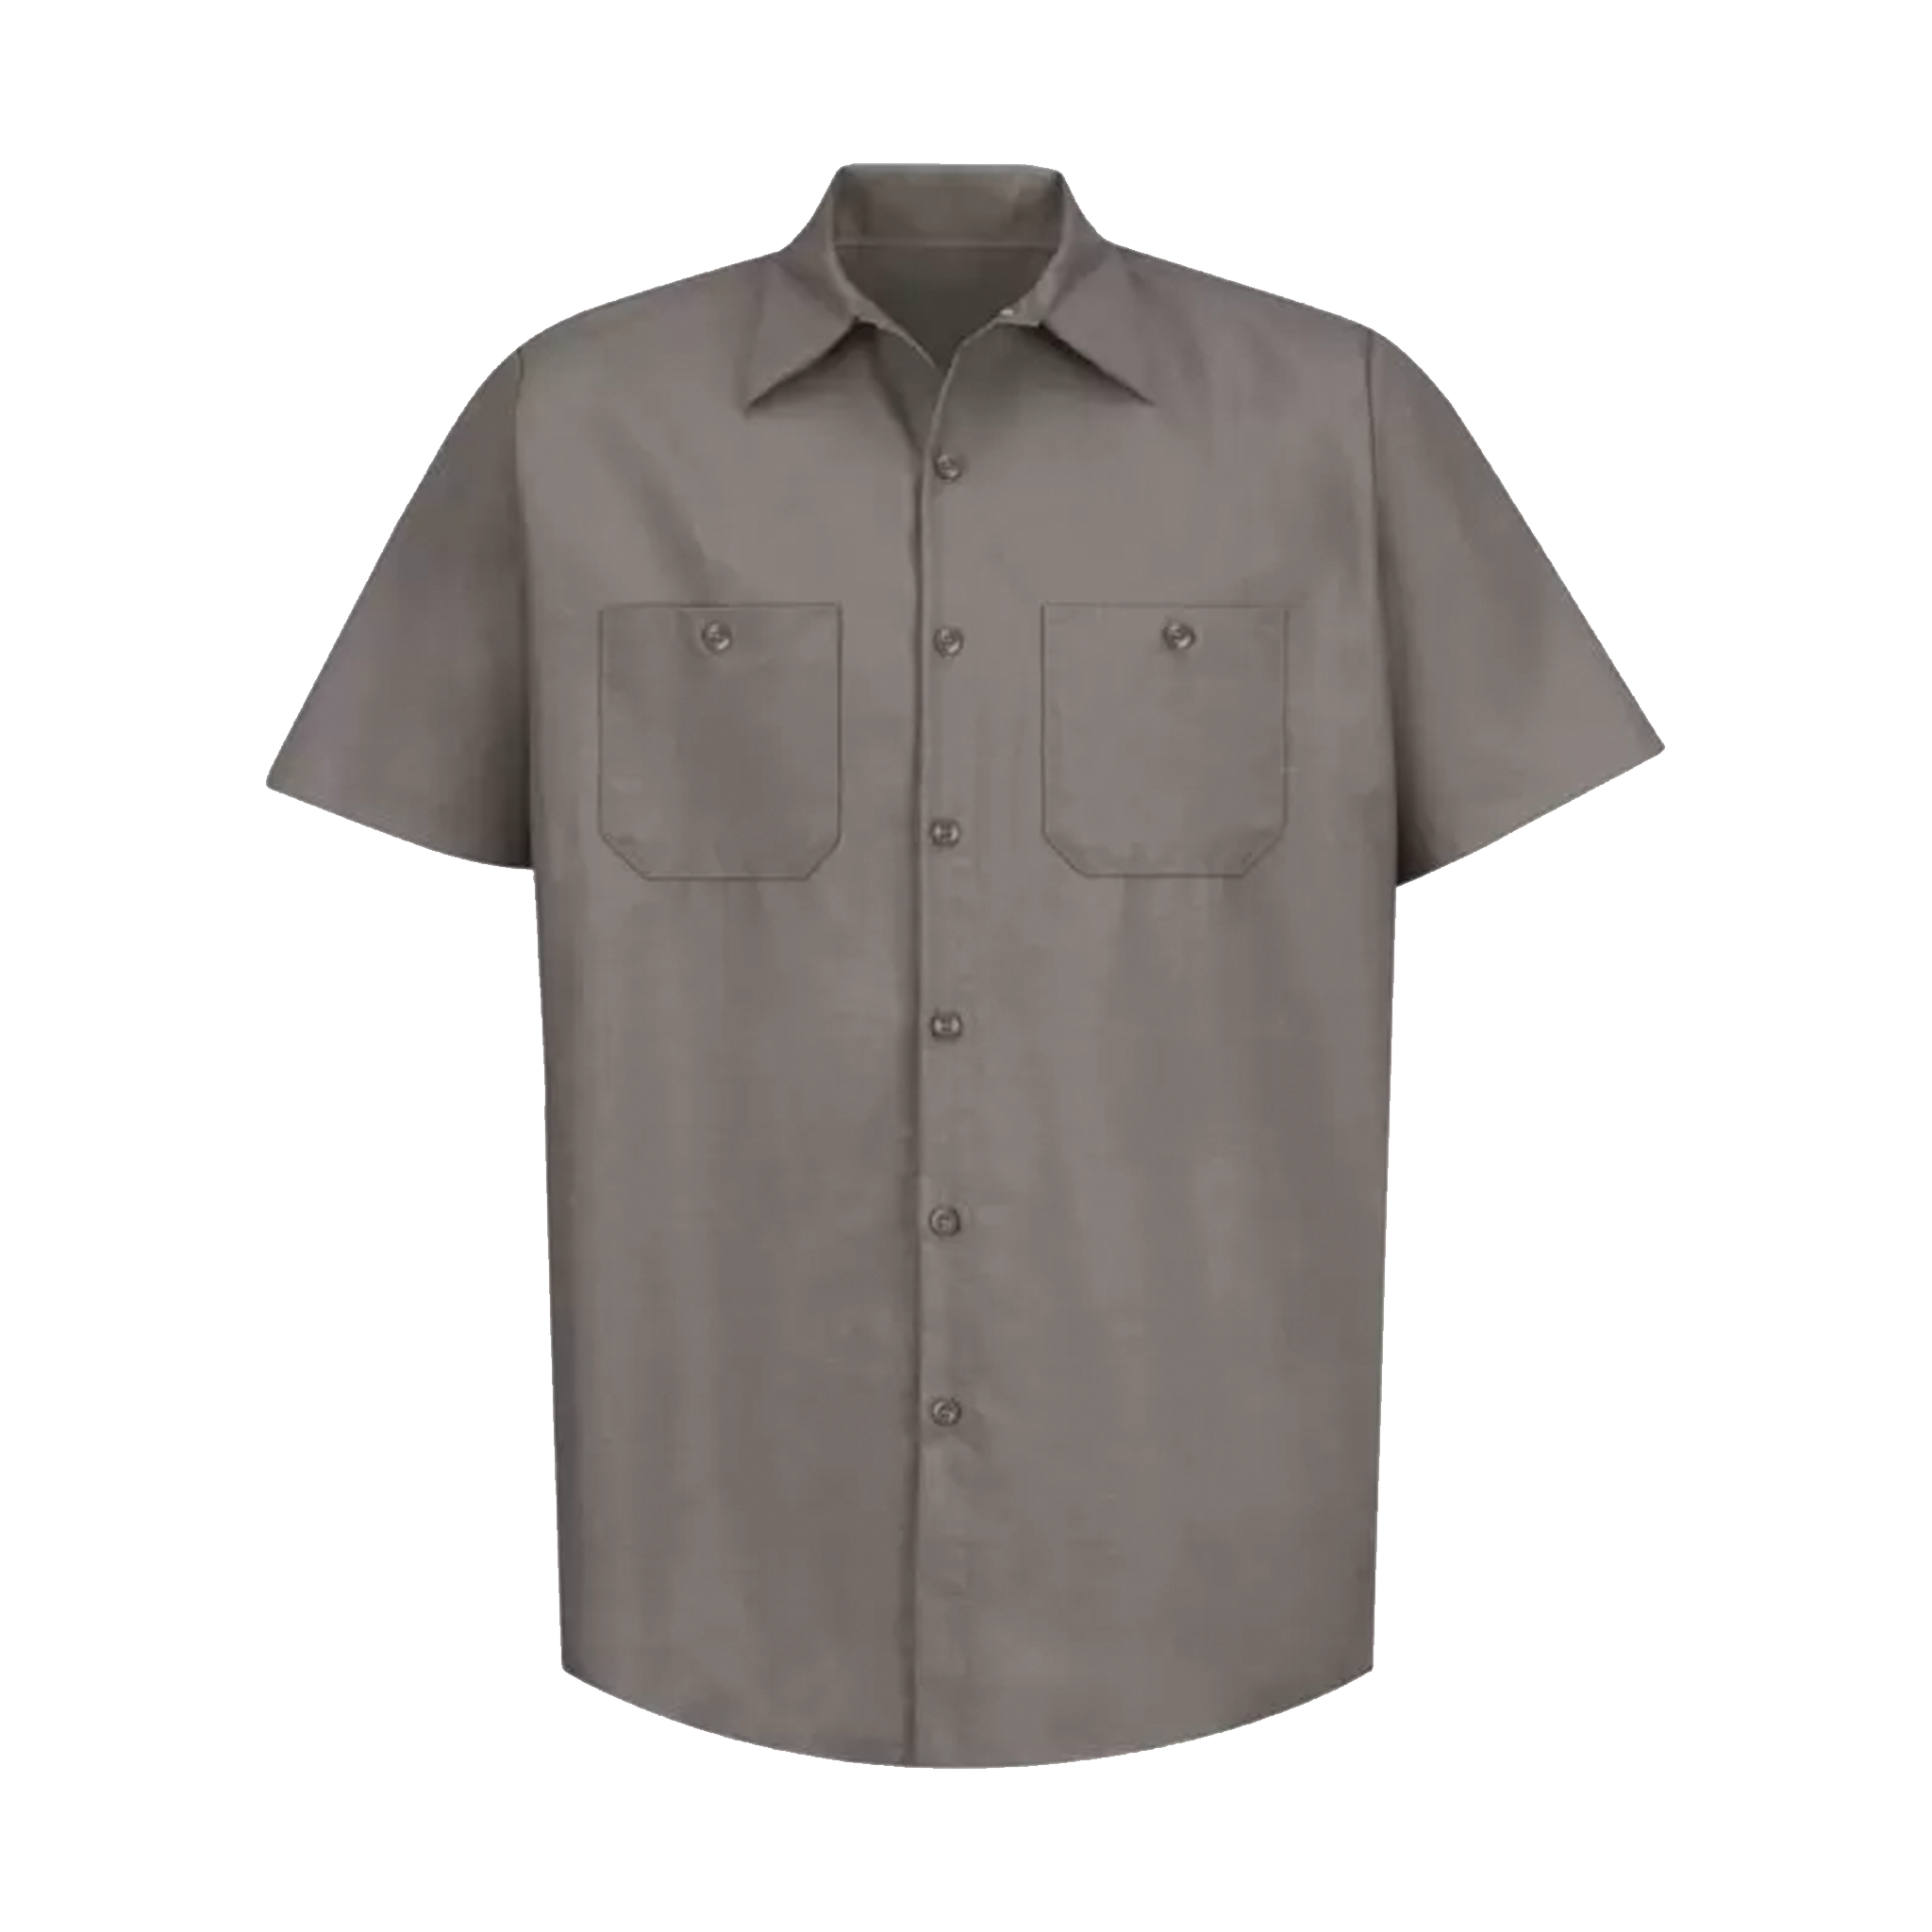 Red Kap Industrial Work Shirt - Men's Sizing S-4XL - Grey